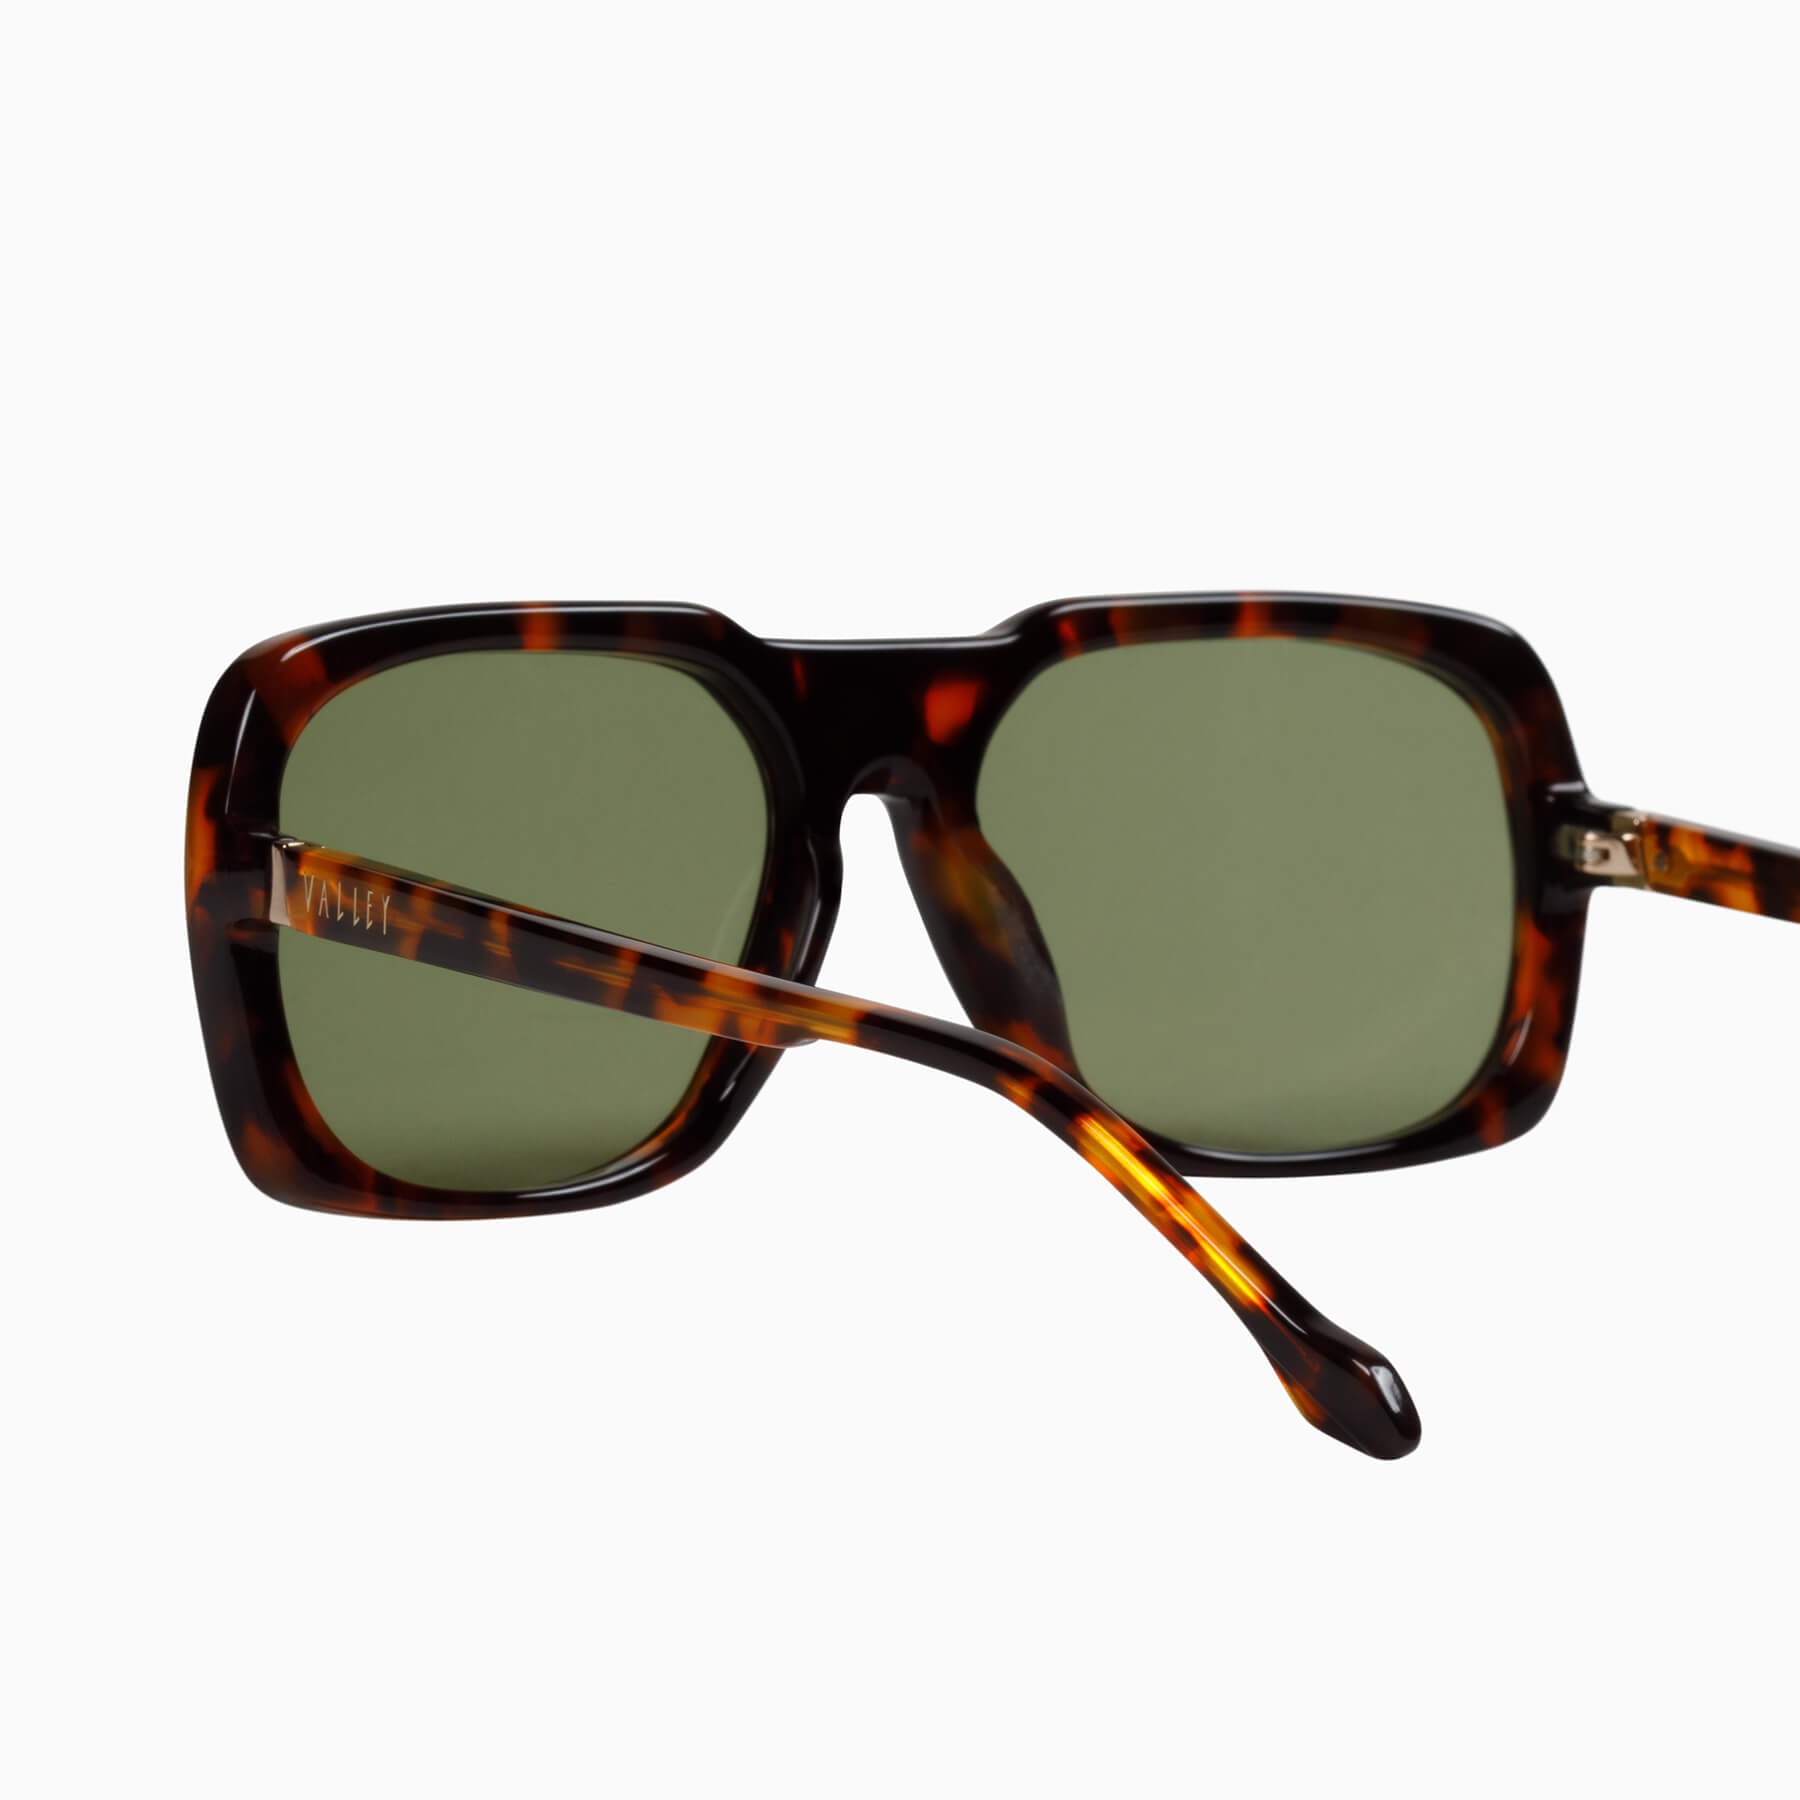 Memoir | Sunglasses - Classic Tort w. 24k Gold Metal Trim / Olive Green Lens